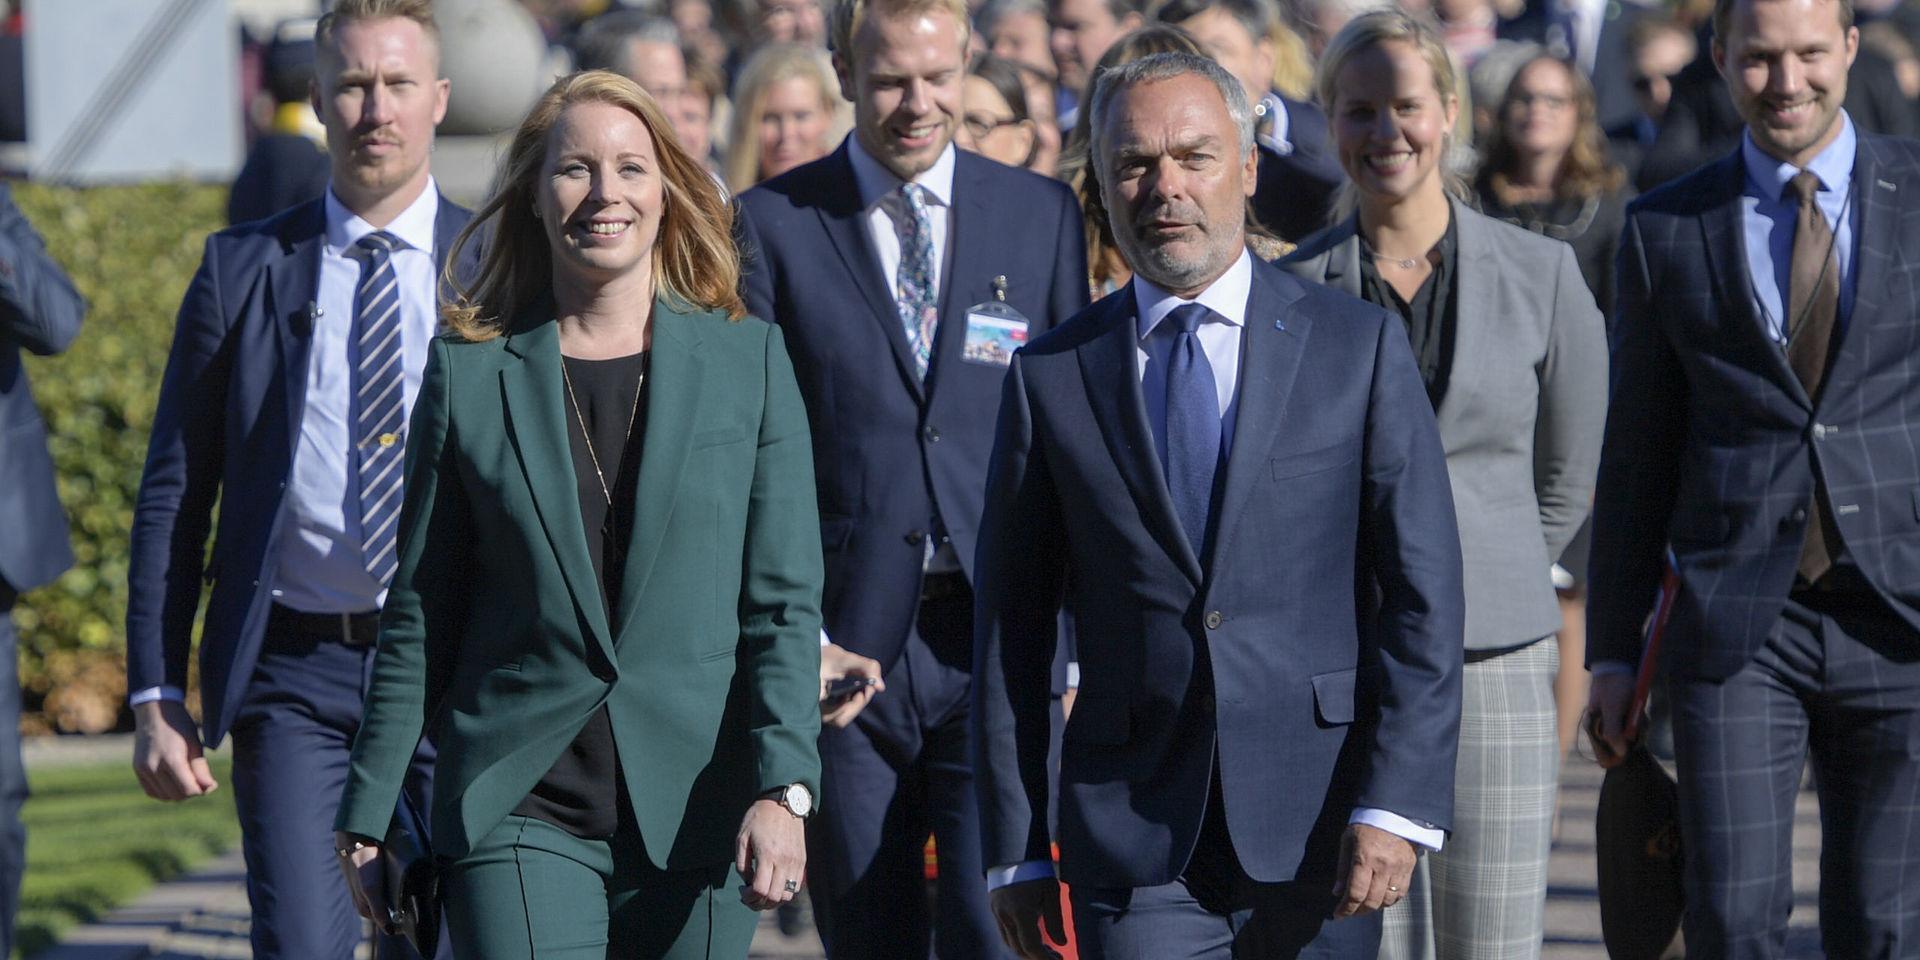 C och L. Centerpartiets partiledare Annie Lööf (C) och Liberalernas partiledare Jan Björklund (L). Bilden är från Riksdagens öppnande.